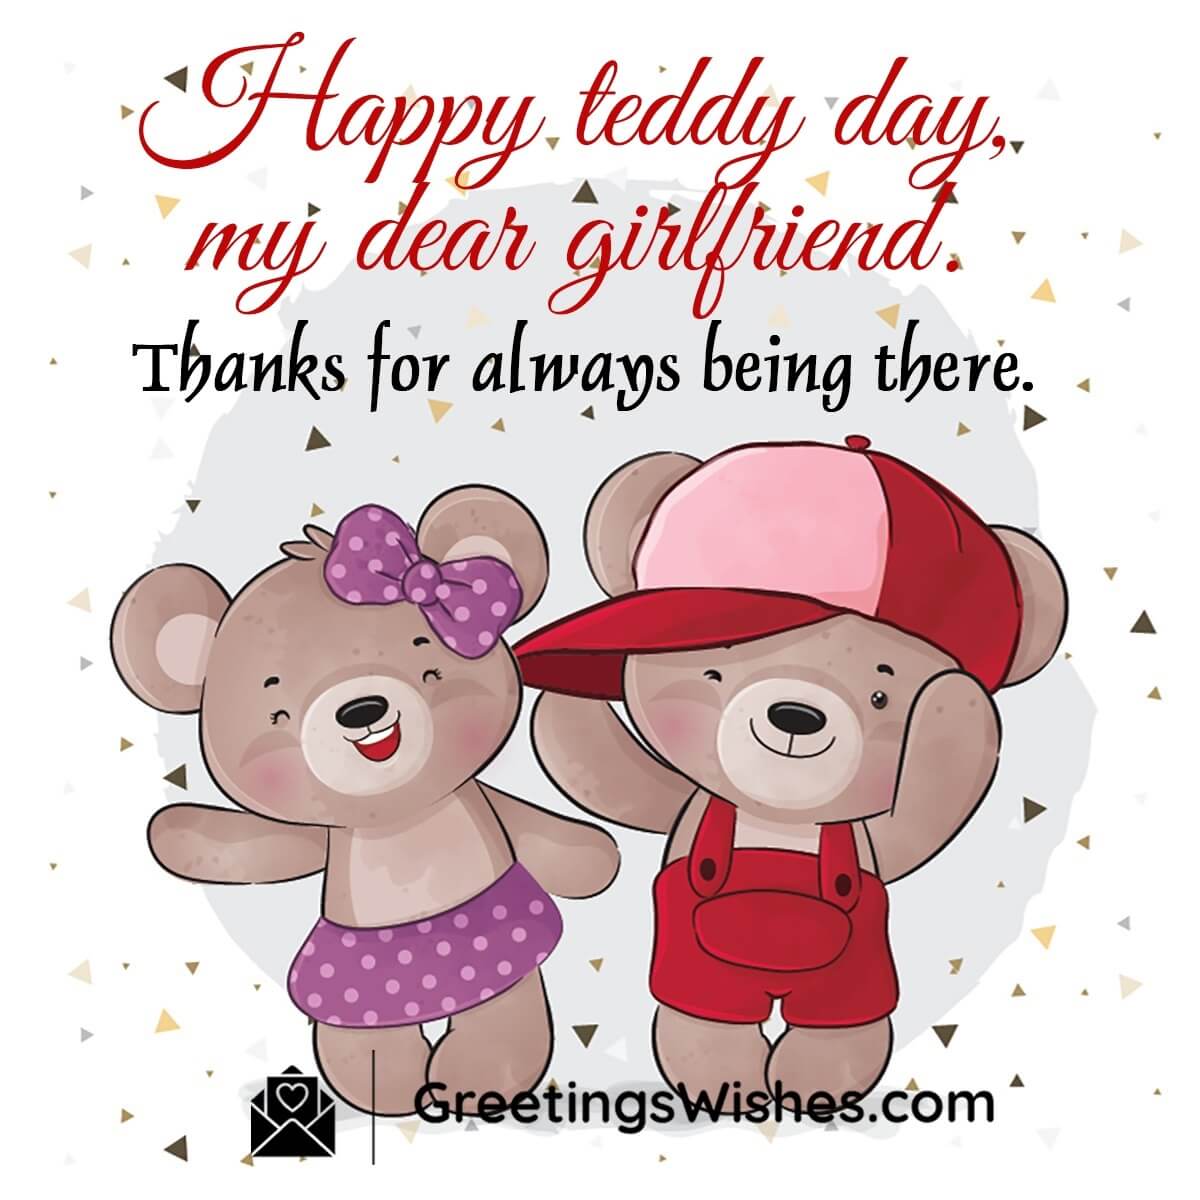 Happy Teddy Day Wish For Girlfriend